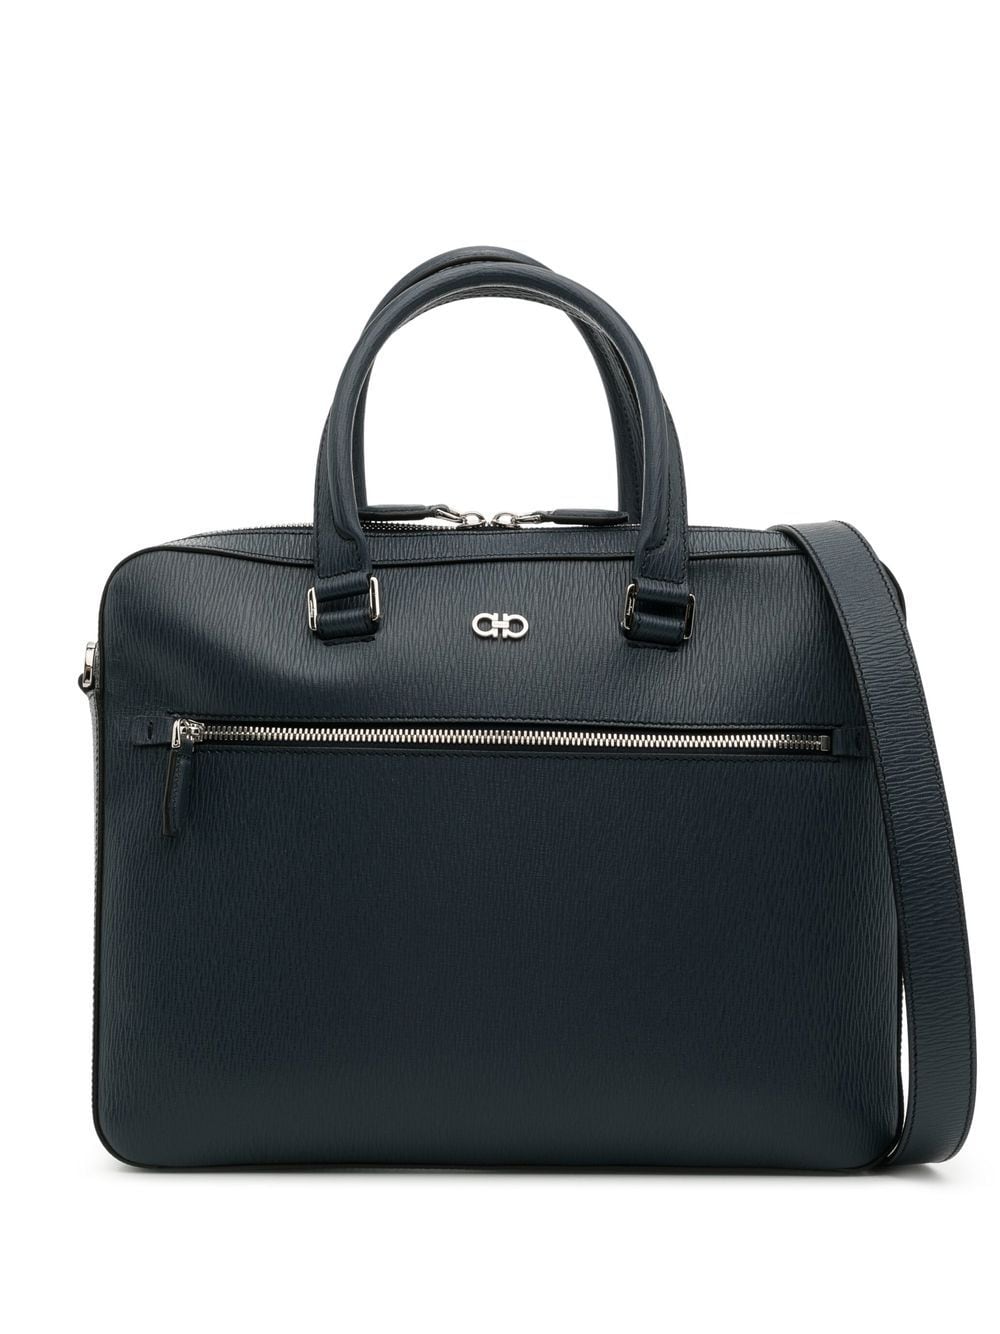 Ferragamo Gancini Leather Business Bag - Farfetch